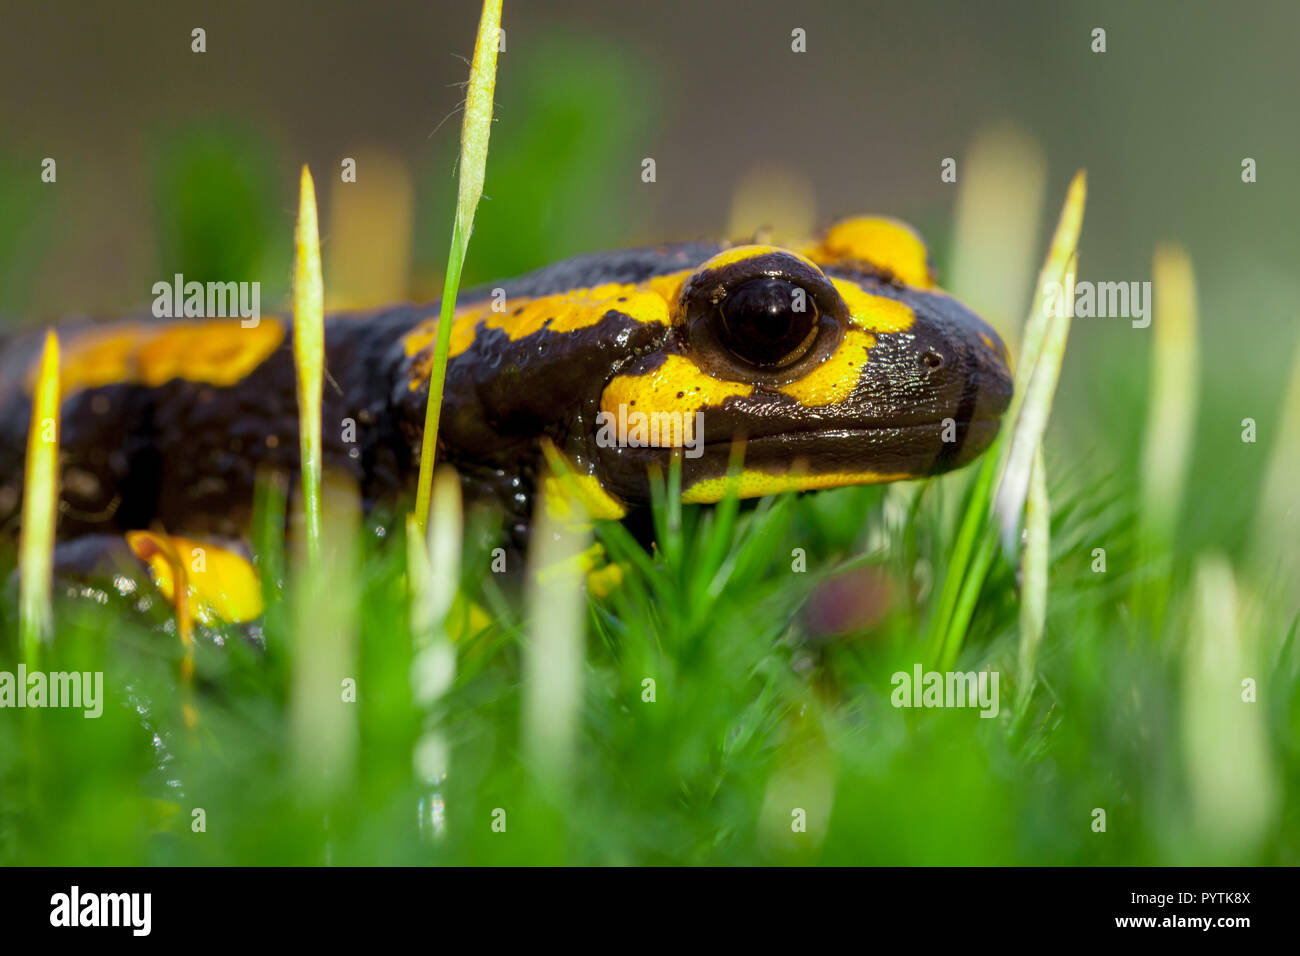 Les salamandres de feu (Salamandre Salamandre) vit dans les forêts de feuillus d'Europe centrale et sont plus fréquentes dans les régions humides. Banque D'Images